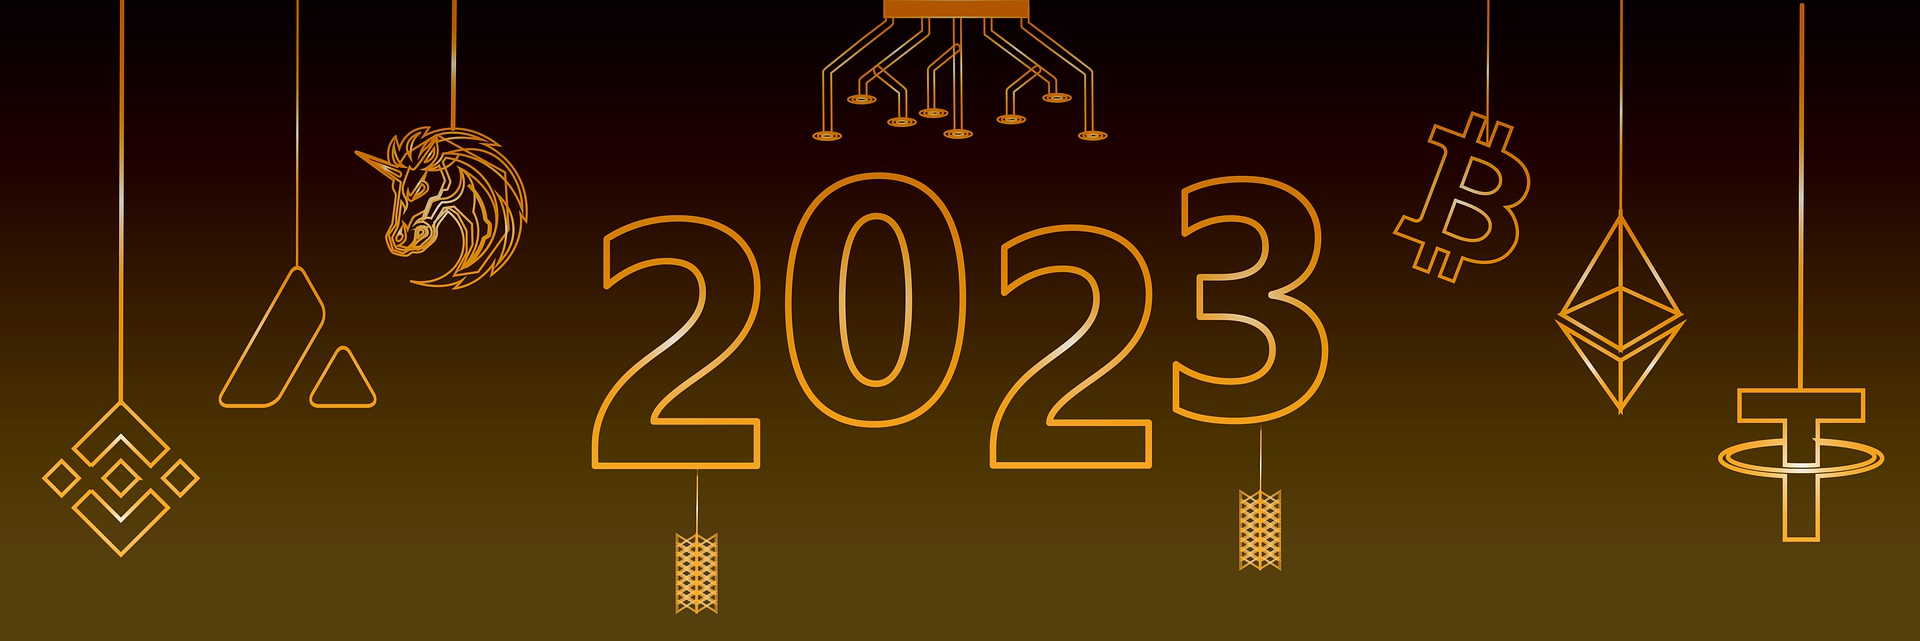 Welcoming 2023. Картинки велком 2023. Обои на компьютер Welcome 2023. Welcome 2023 years. Welcome 2023.